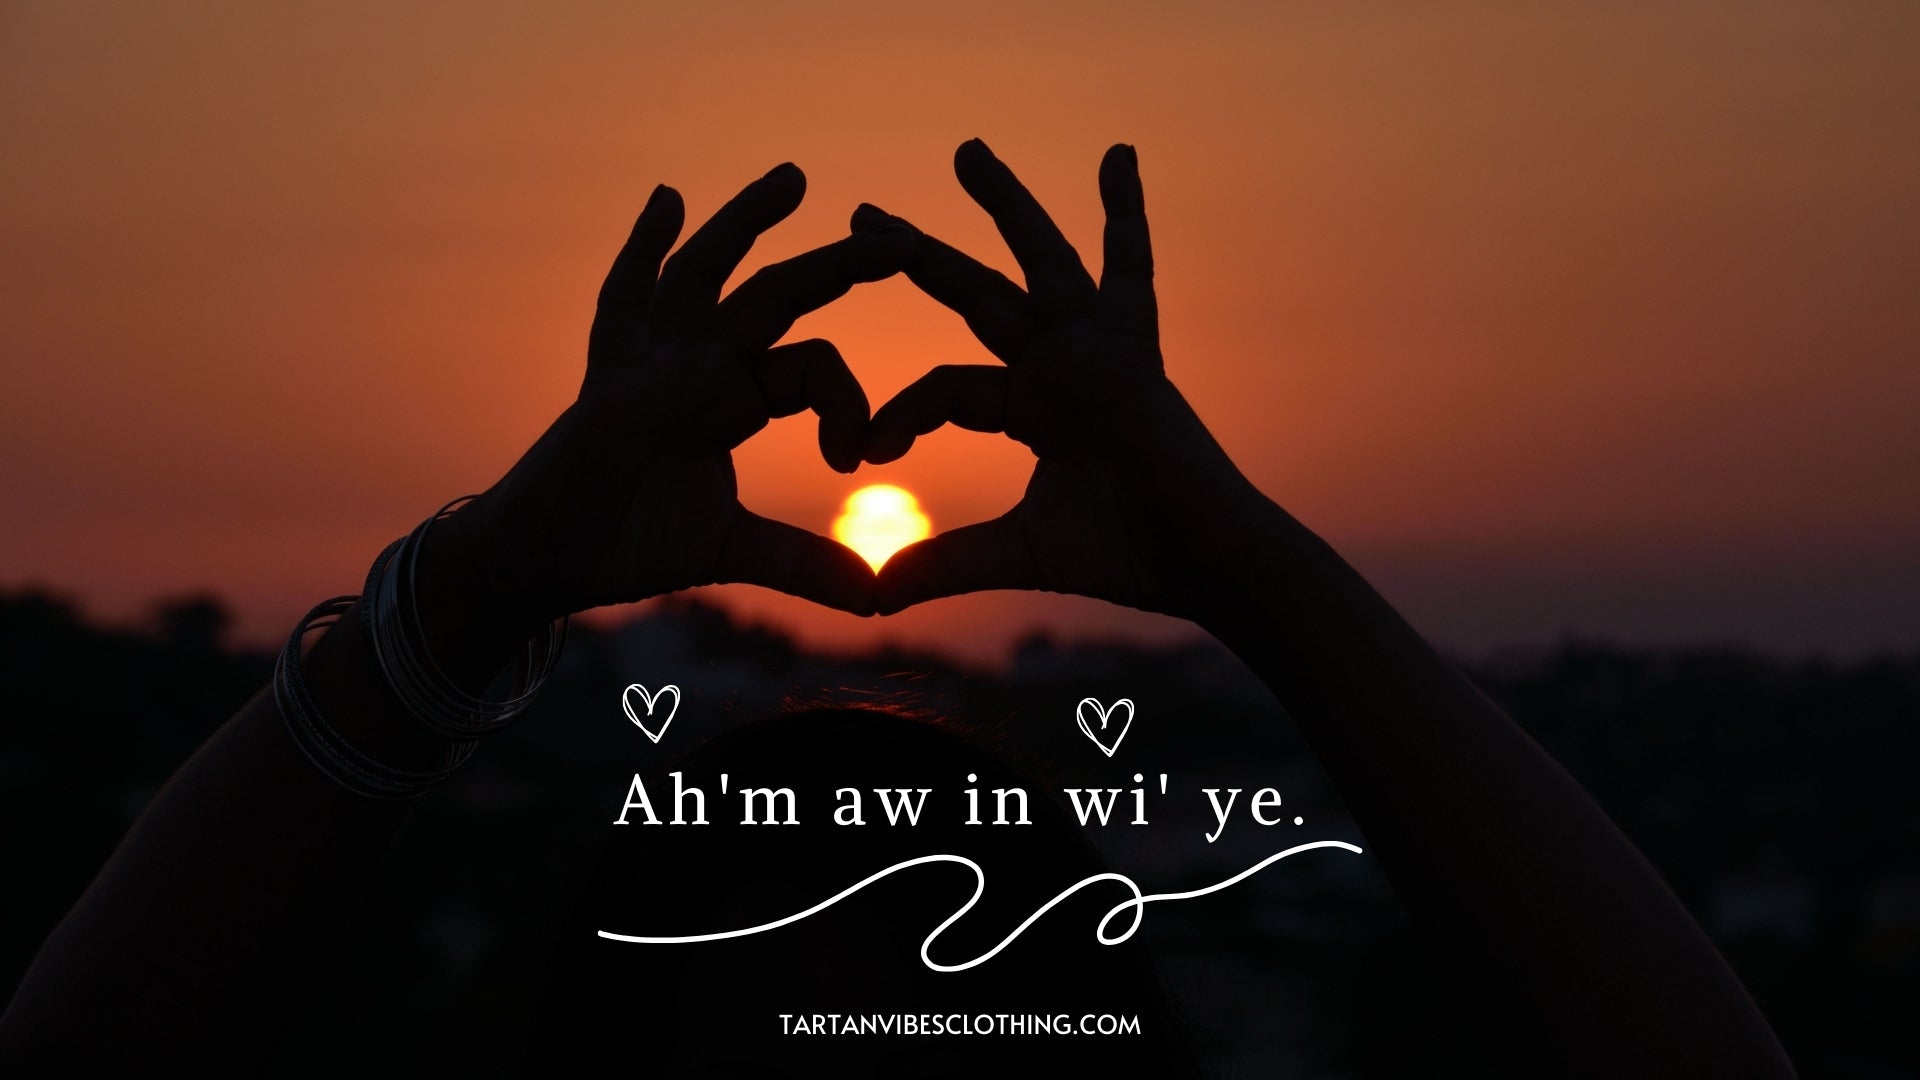 Ah'm aw in wi' ye - how to say i love you in irish